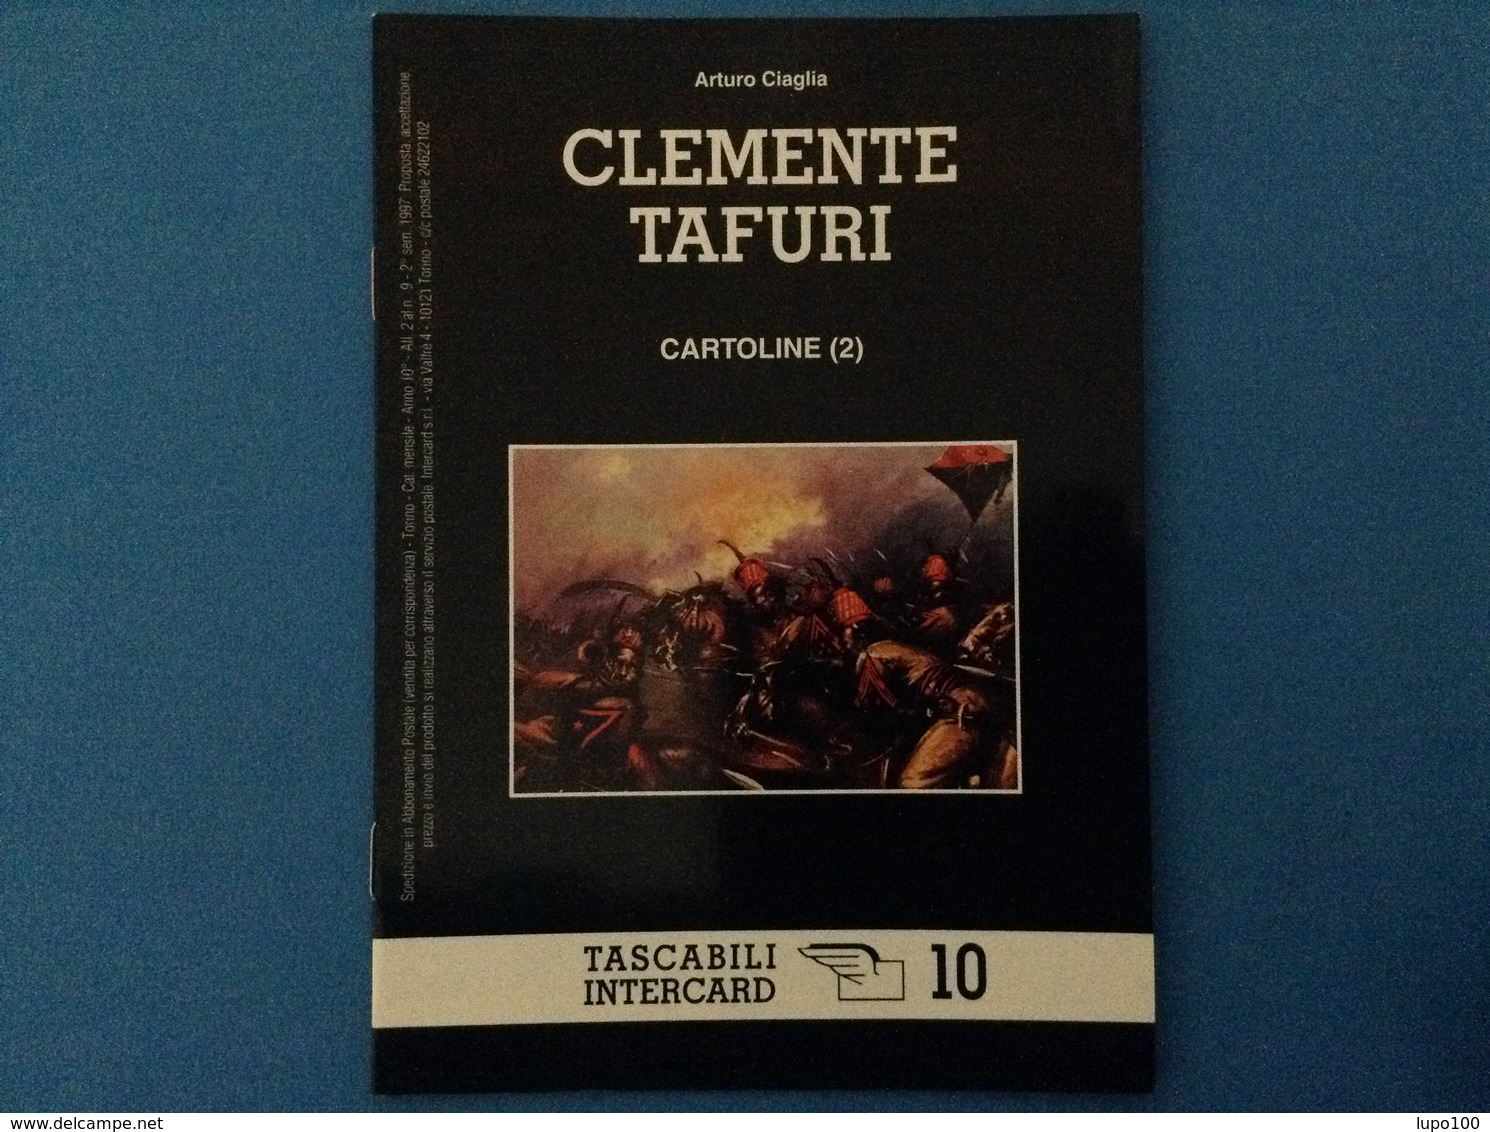 CARTOLINE CATALOGO TASCABILI INTERCARD N 10 ARTURO CIAGLIA CLEMENTE TAFURI - Italien